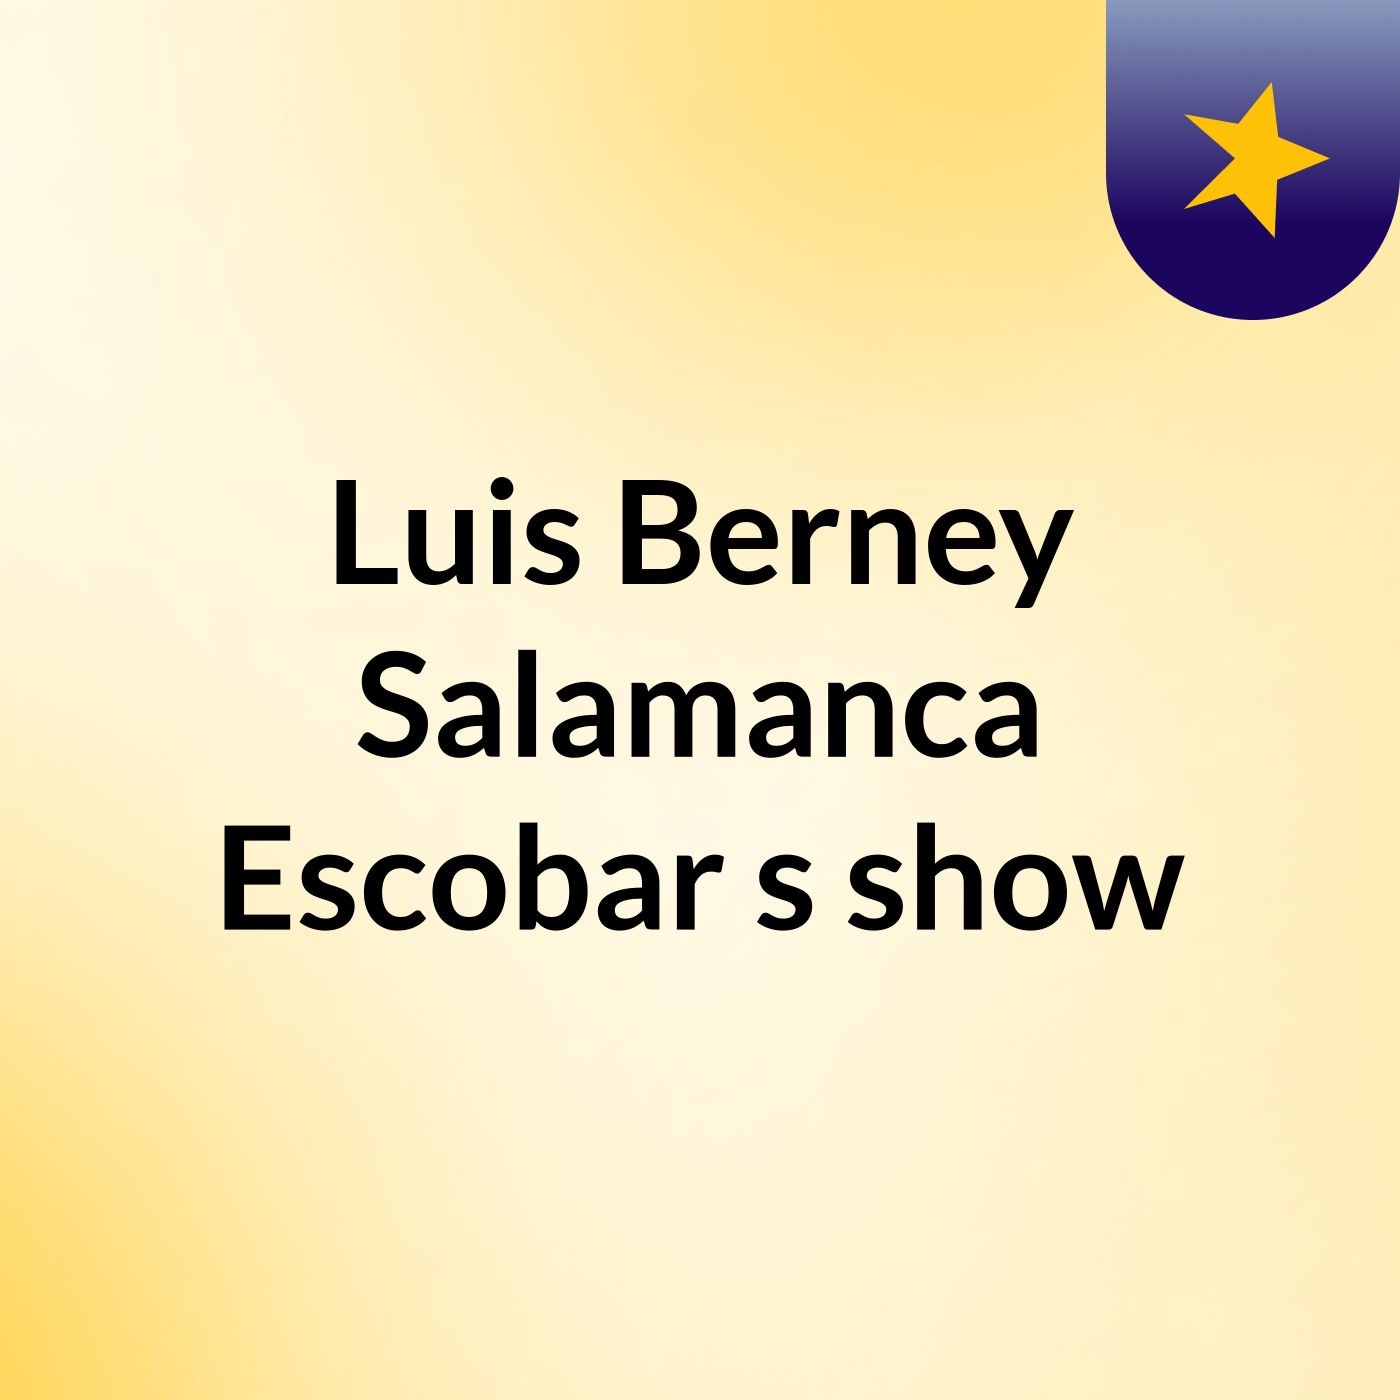 Luis Berney Salamanca Escobar's show